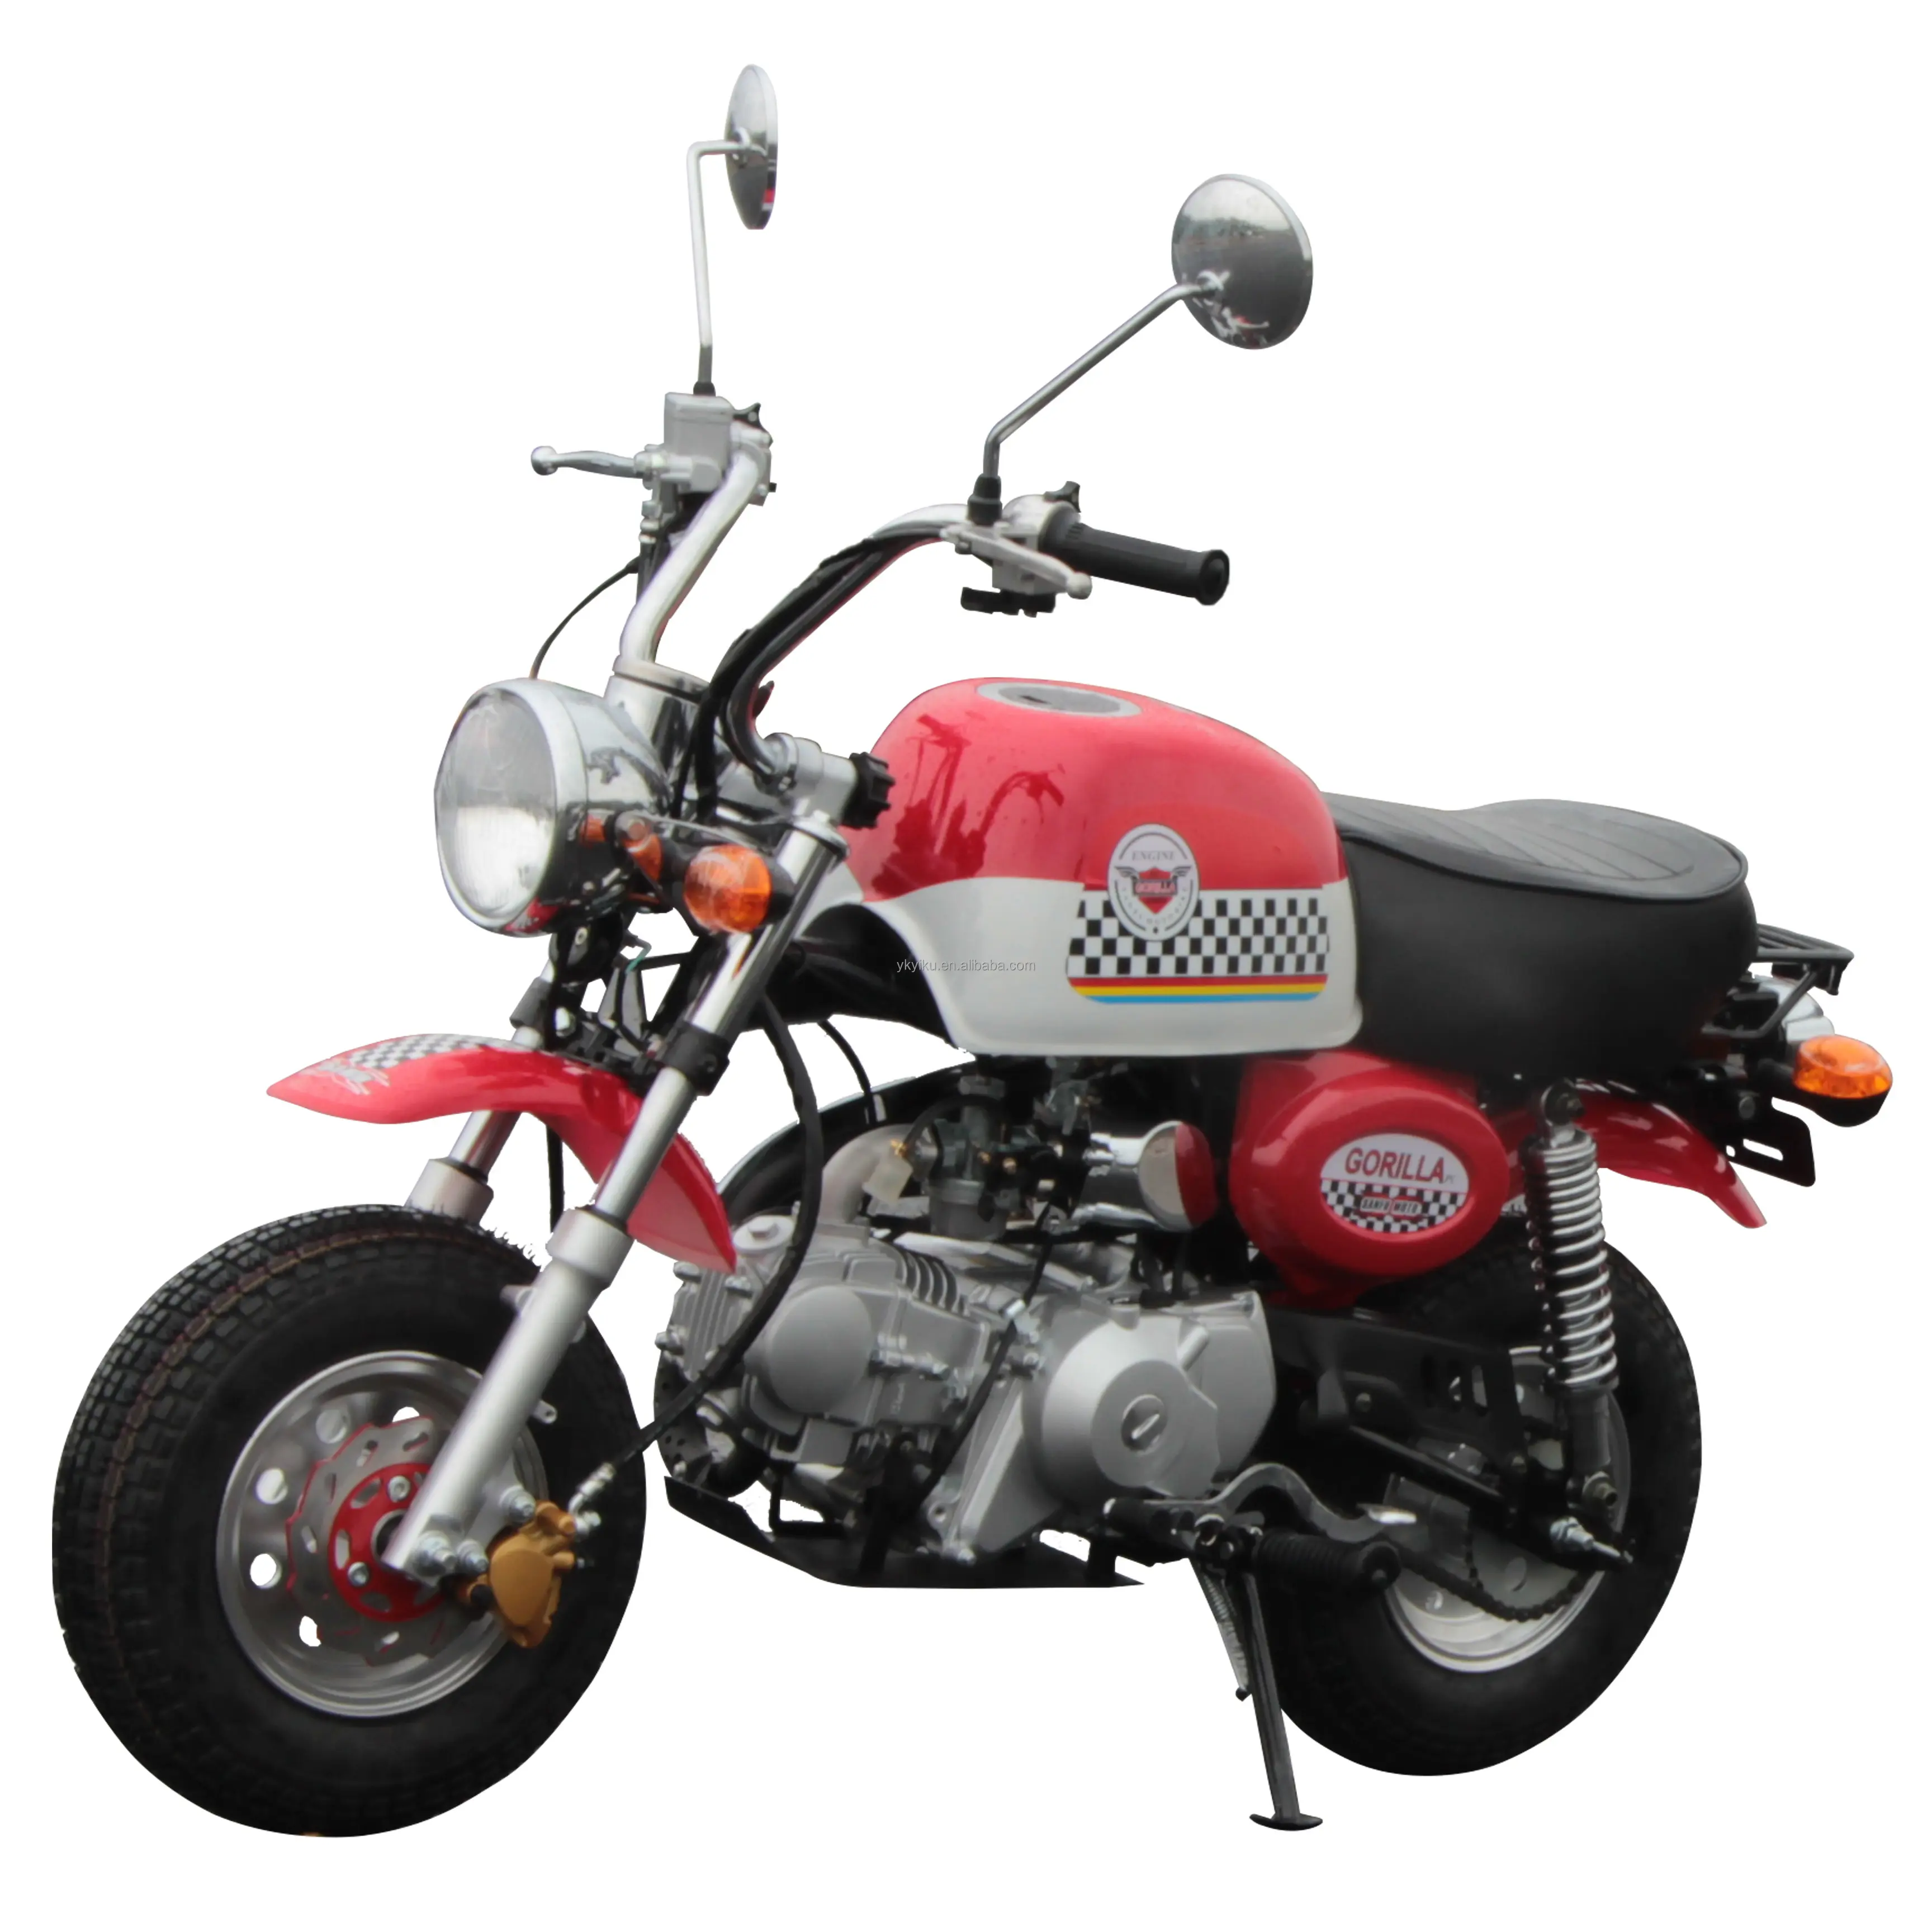 Nuevo modelo 110cc 125cc Mini mono babuino gas calle bicicleta gas gasolina motocicleta